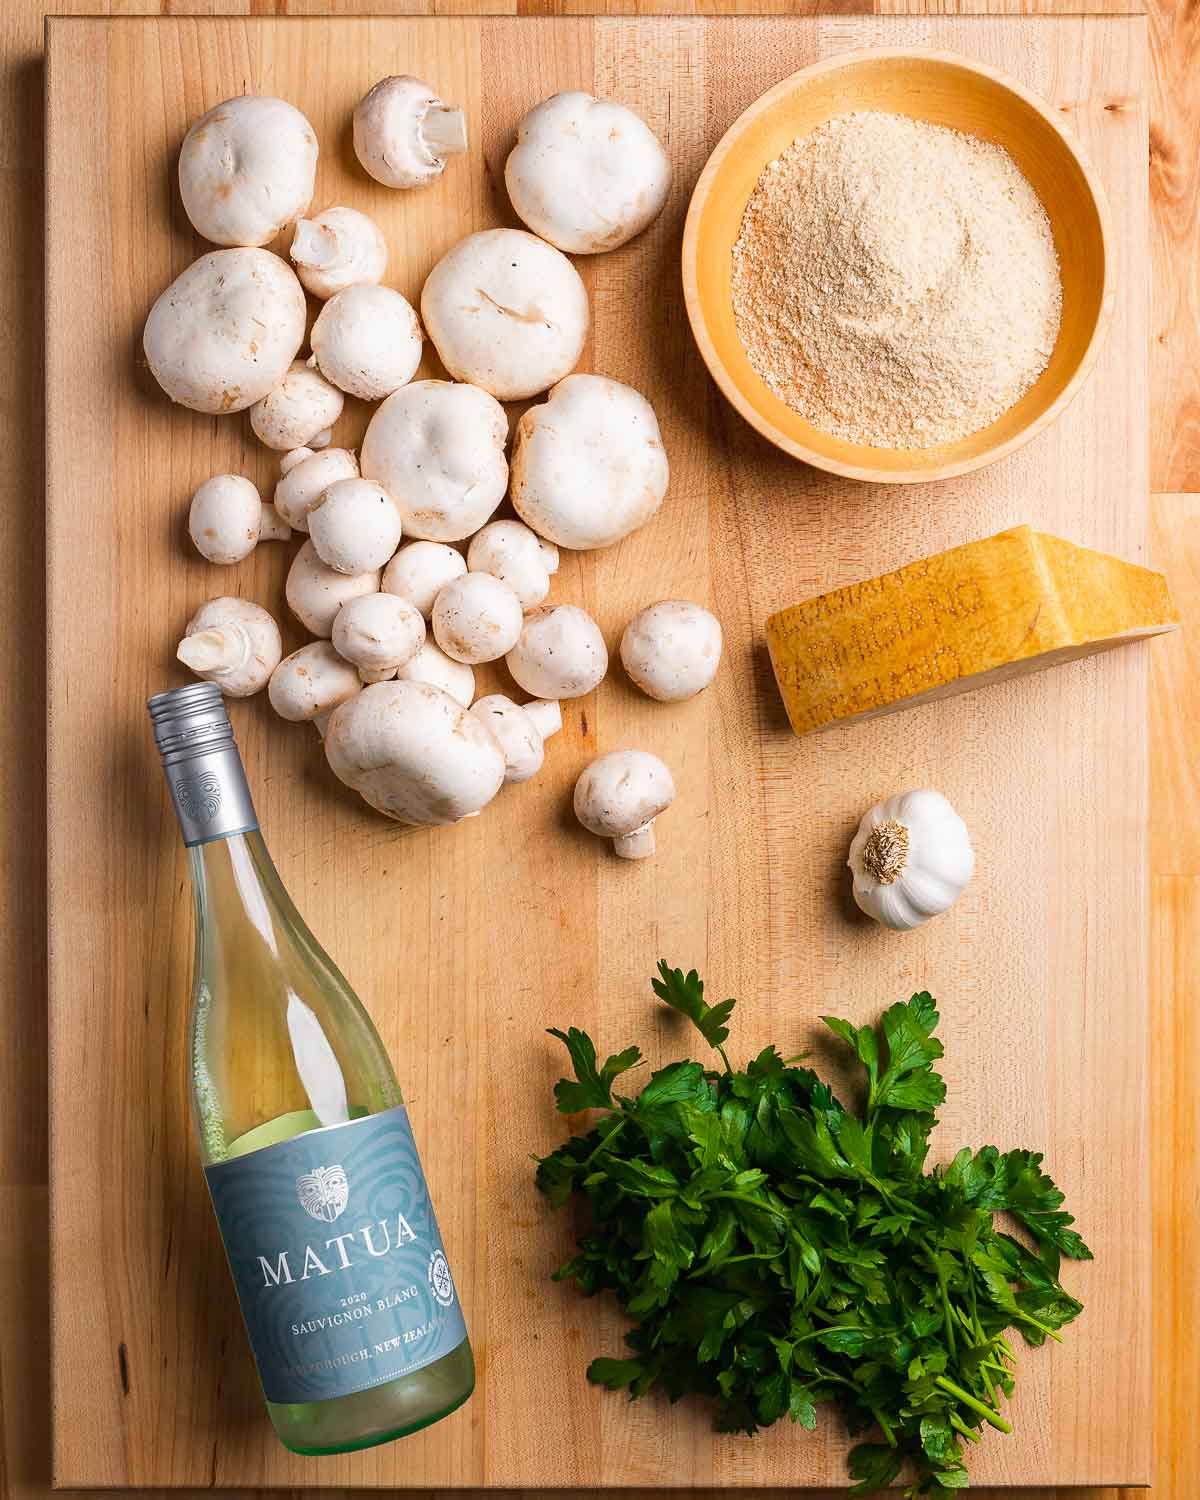 Ingredients shown: Loose mushrooms, breadcrumbs, white wine, parsley, garlic, and parmesan cheese.